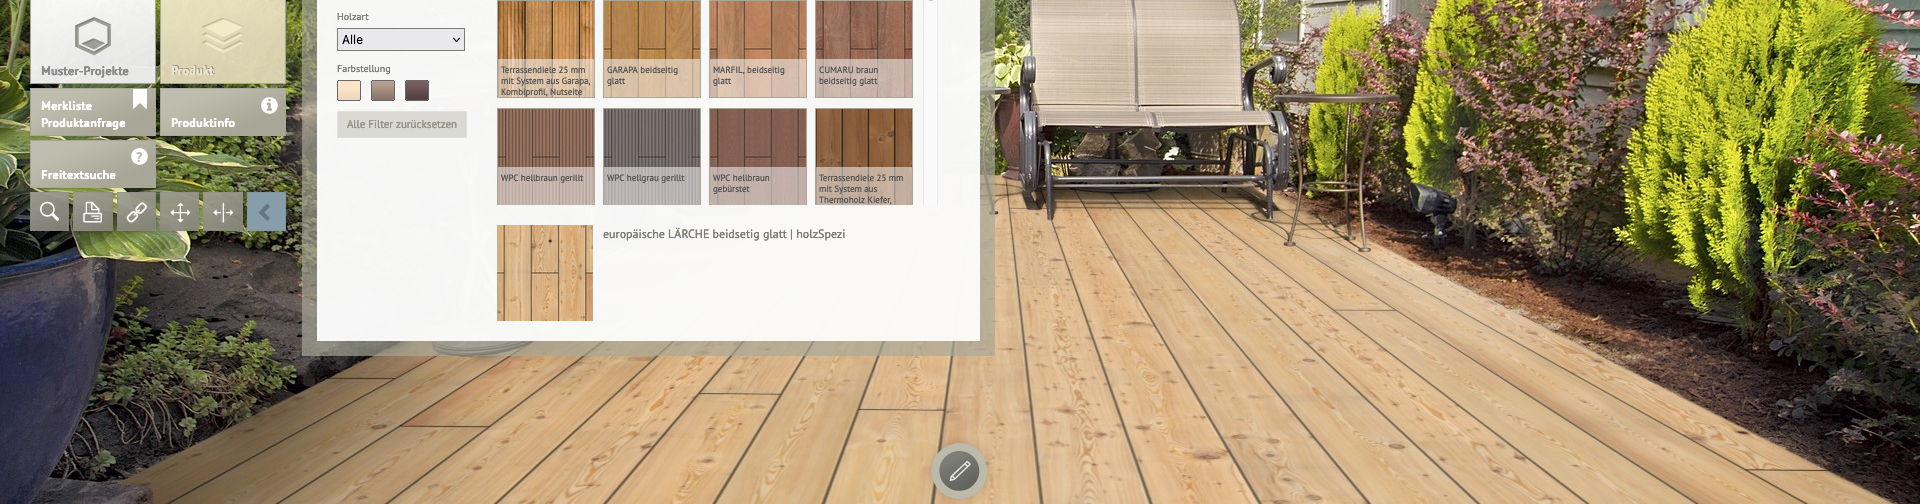 Virtueller Terrassenplaner von Holz-Berner mit einer Auswahl an Terrassendielen im Hinterhofambiente. Kunden können Holztypen für ihre Außenbereiche virtuell anpassen und das Ergebnis in einer realistischen Gartenansicht betrachten.